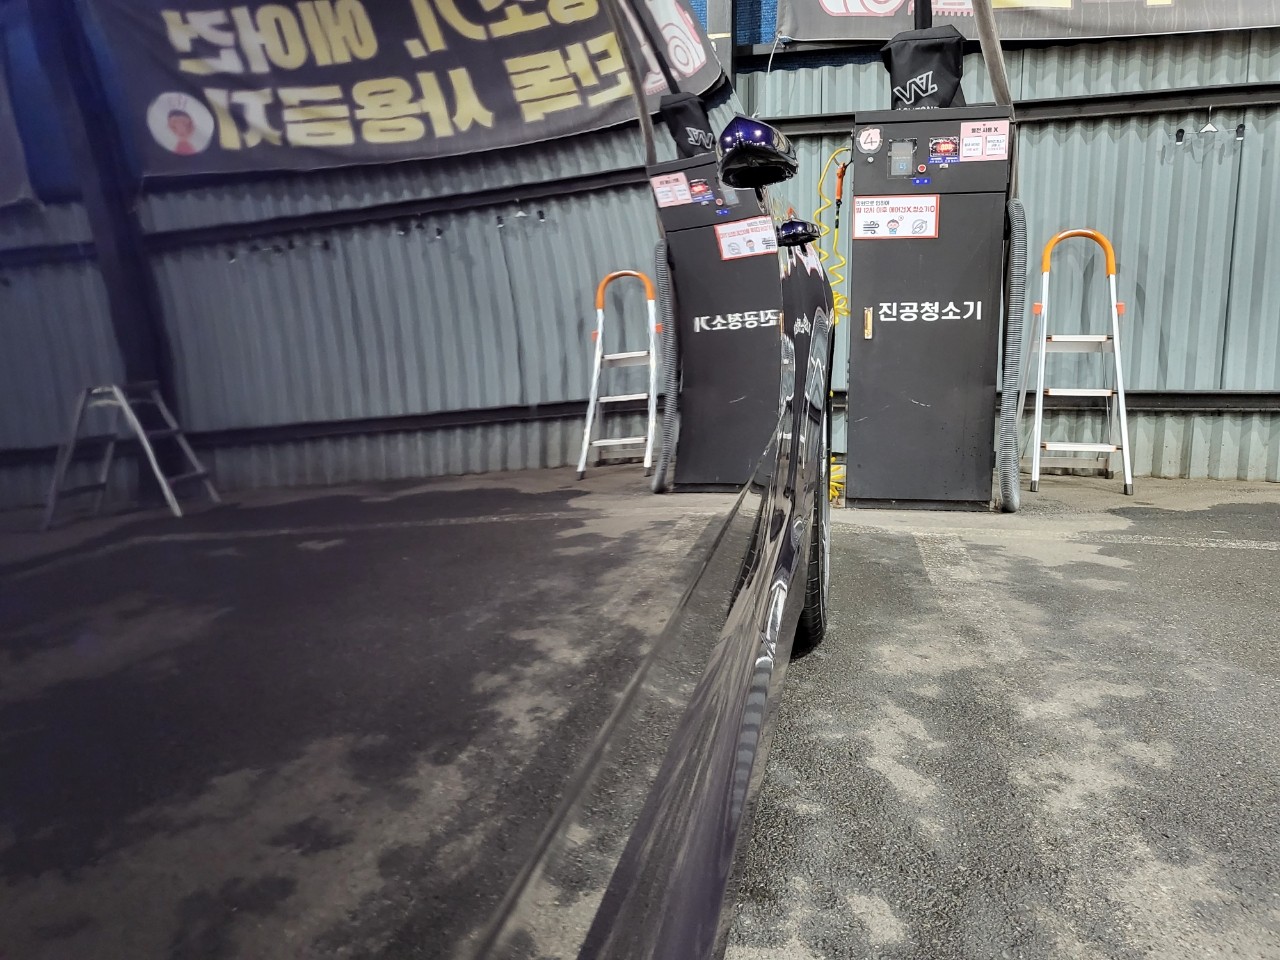 바퀴, 자전거 바퀴, 육상 차량, 타이어이(가) 표시된 사진

자동 생성된 설명